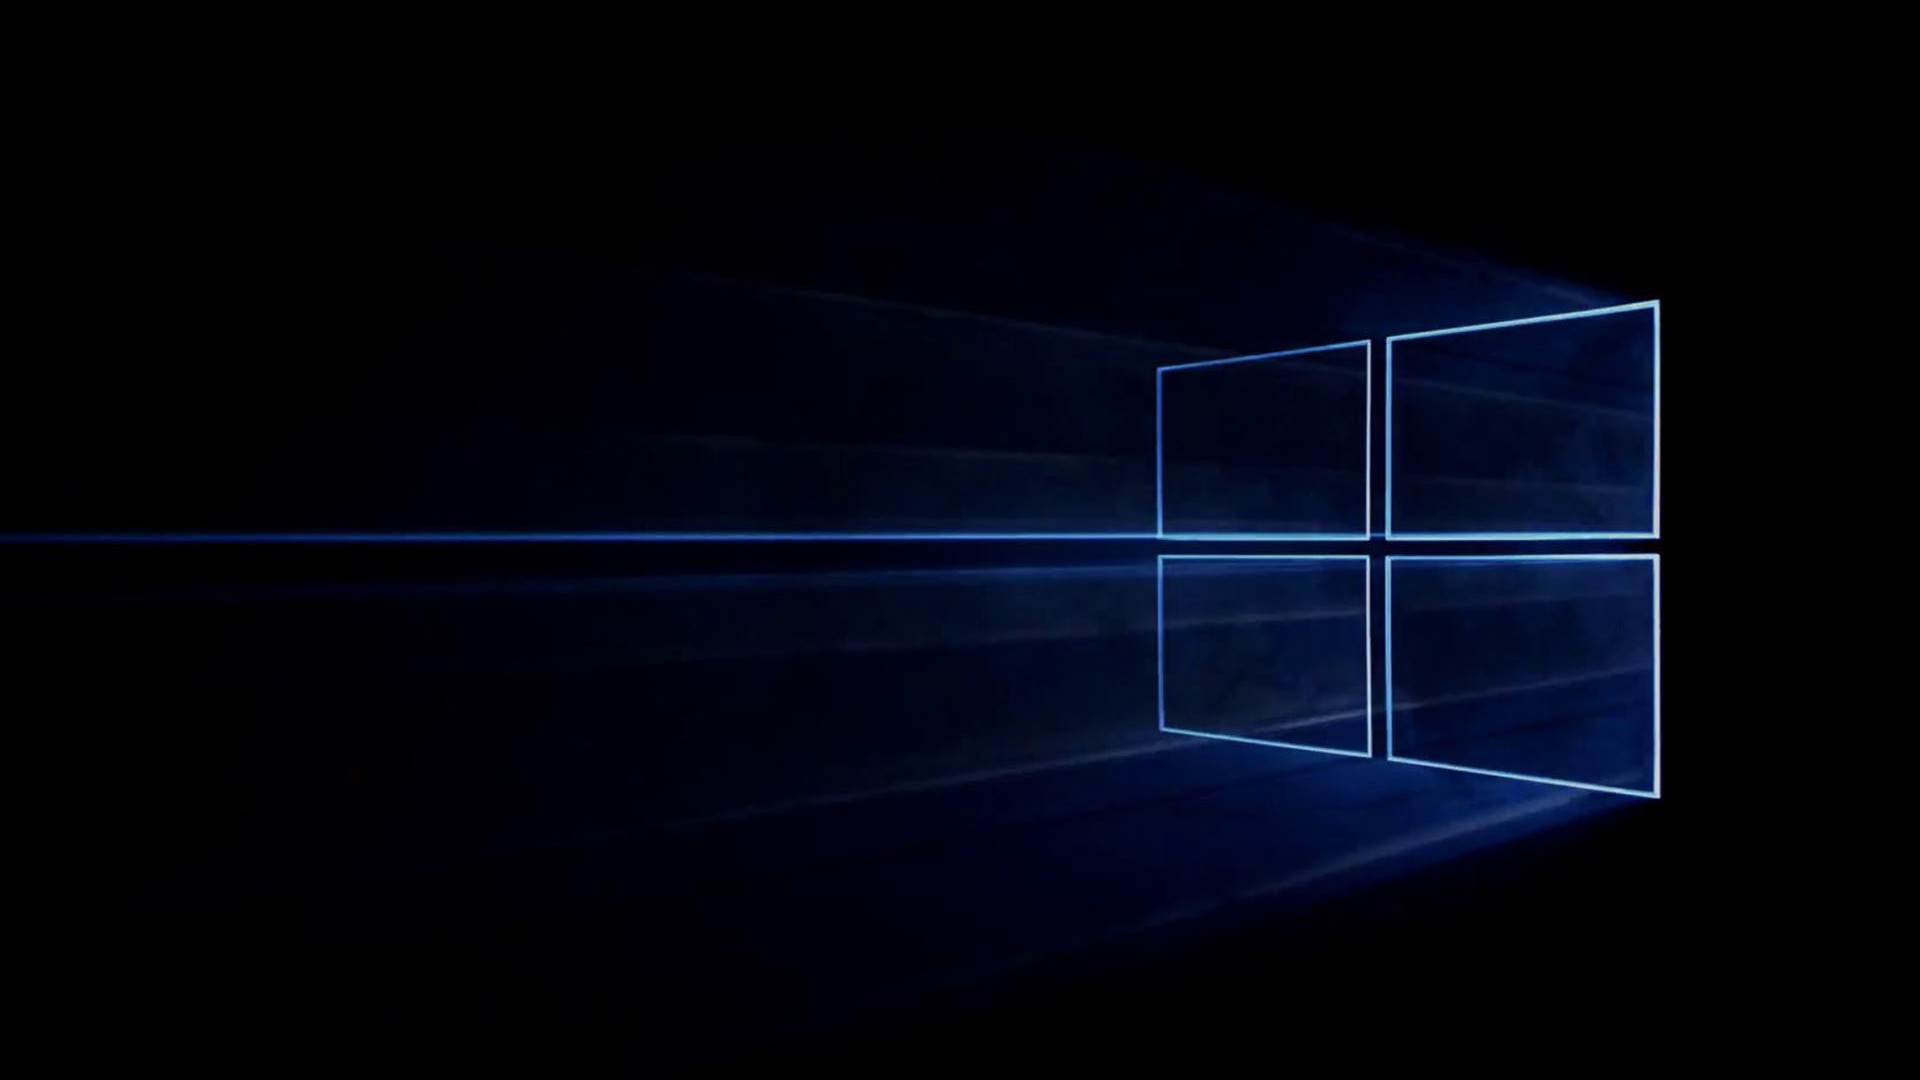 Nếu bạn chưa biết giao diện mới của Windows 10 đẹp như thế nào, hãy xem qua video này